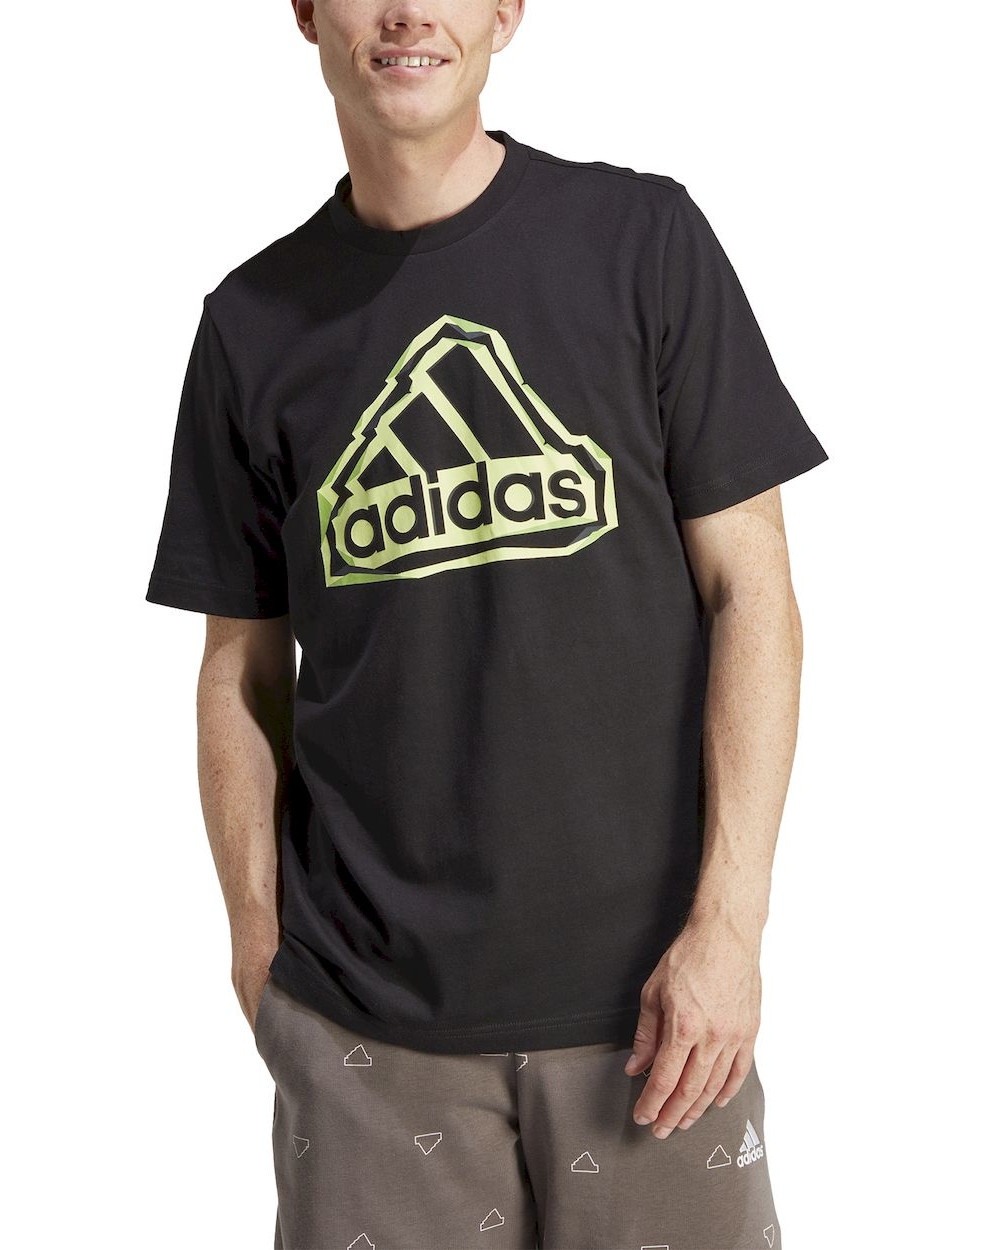  T-shirt maglia maglietta UOMO Adidas Nero FLD BOS LOGO Cotone jersey